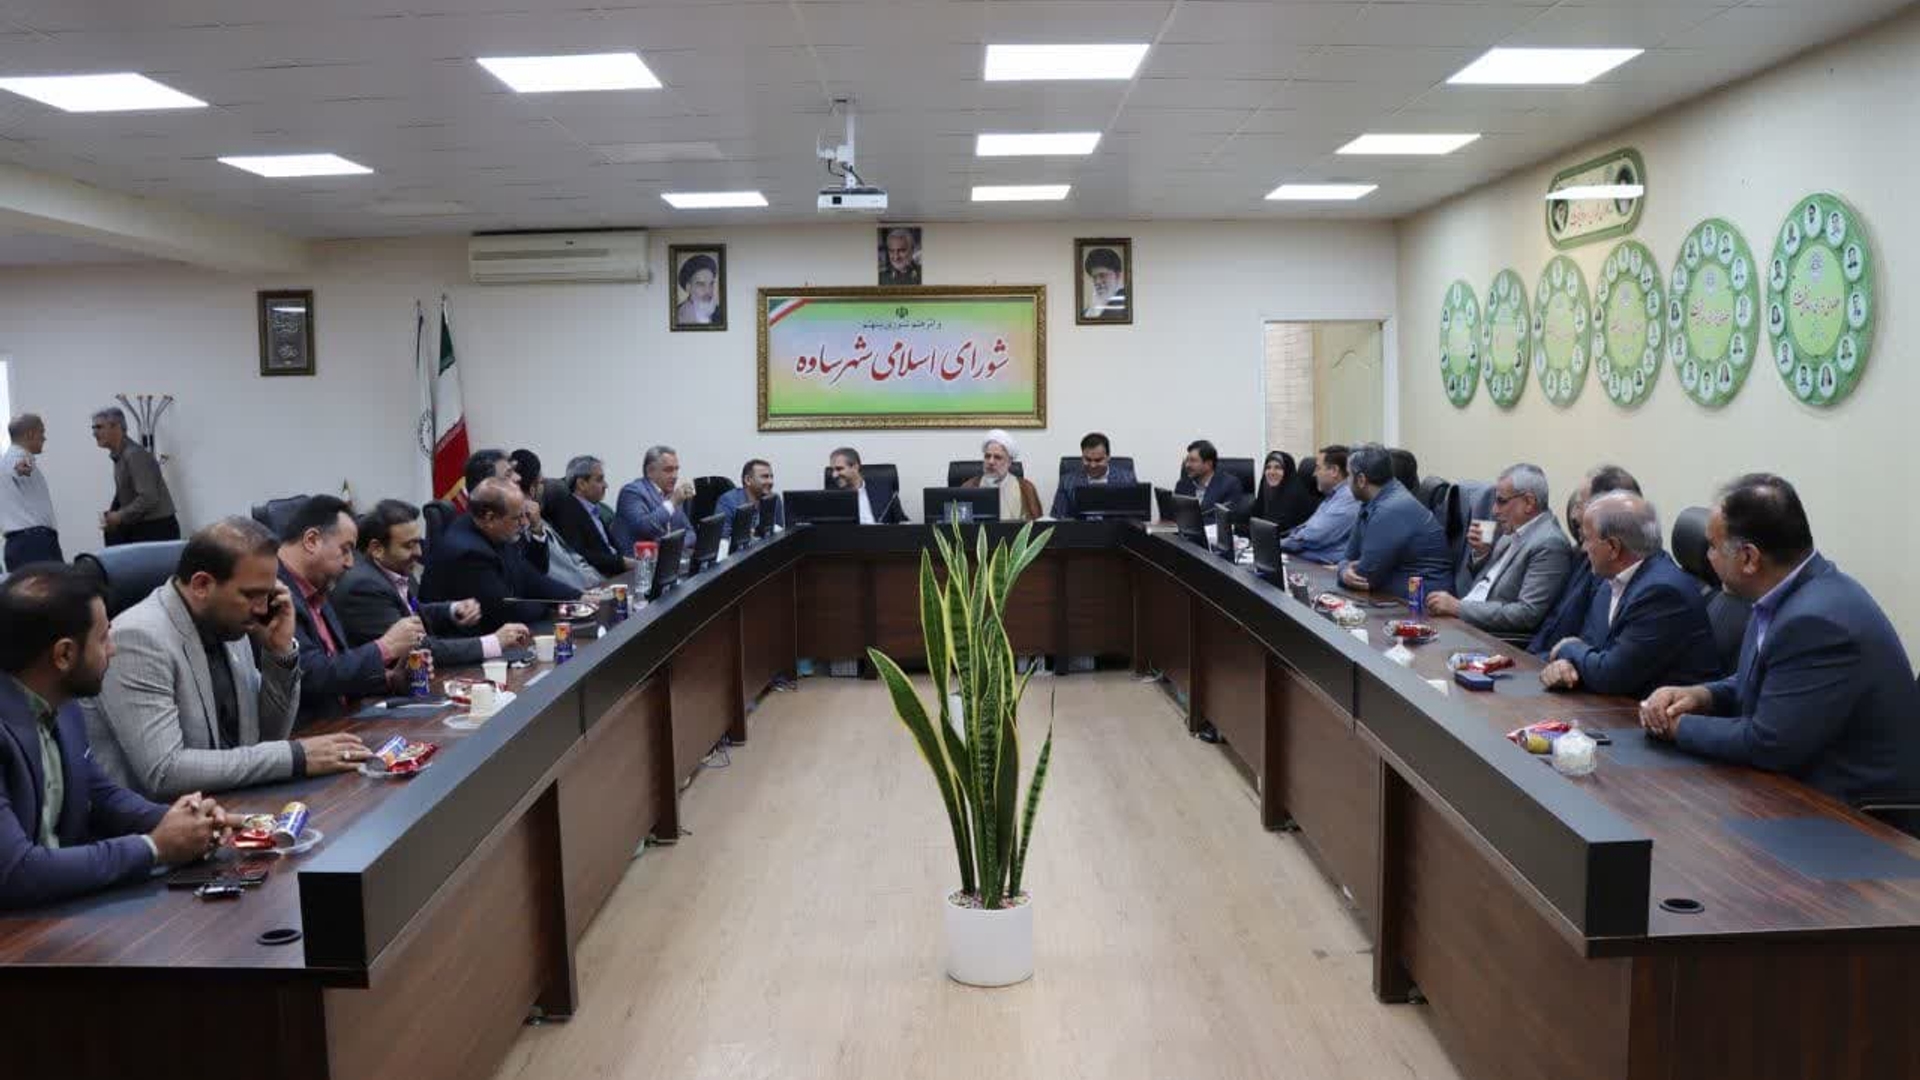 دیدار مسئولان شهرستان با اعضای شورای اسلامی شهرساوه به مناسبت روز شوراها